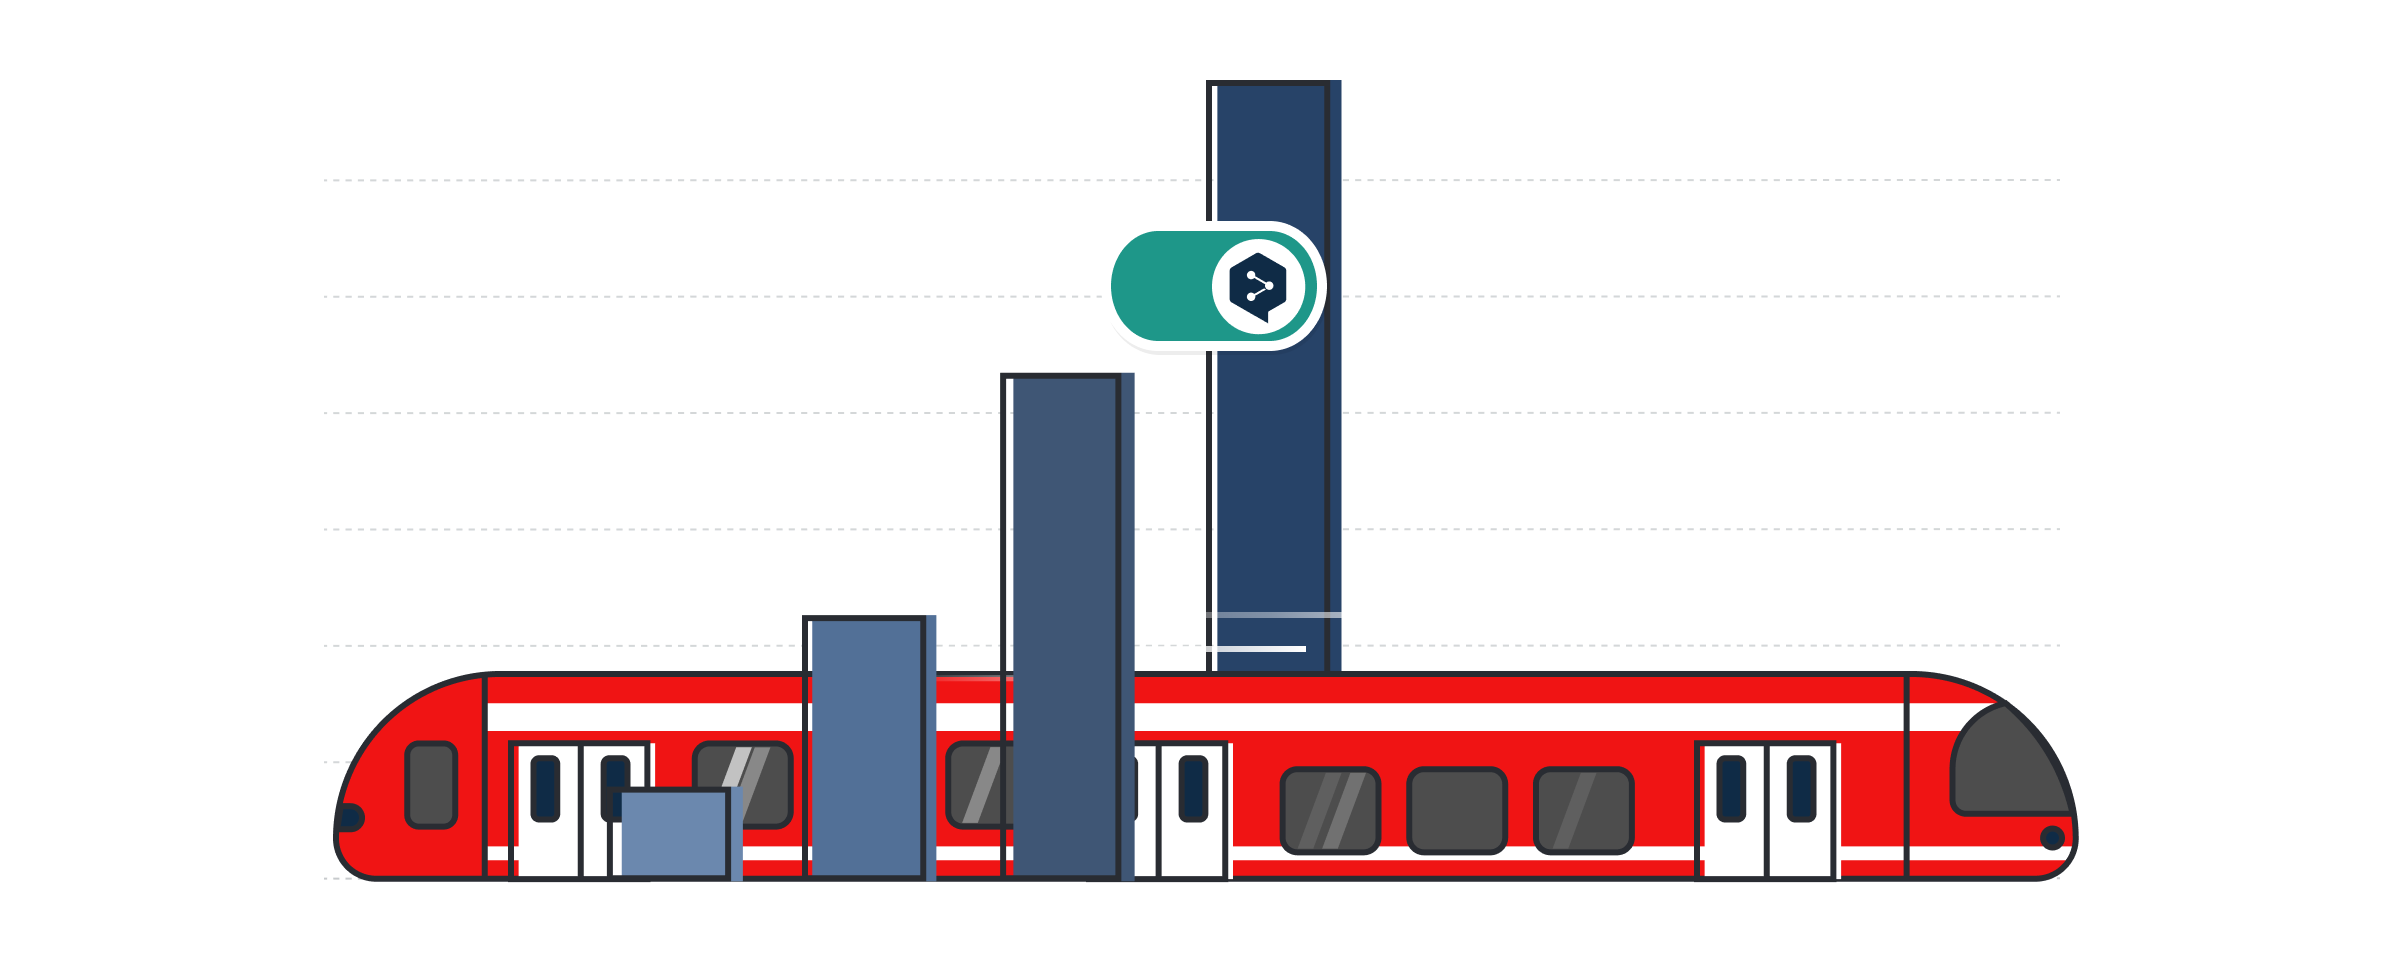 Abbildung mit einem roten DB-Zug und dem DeepL Pro-Logo über einem Balkendiagramm